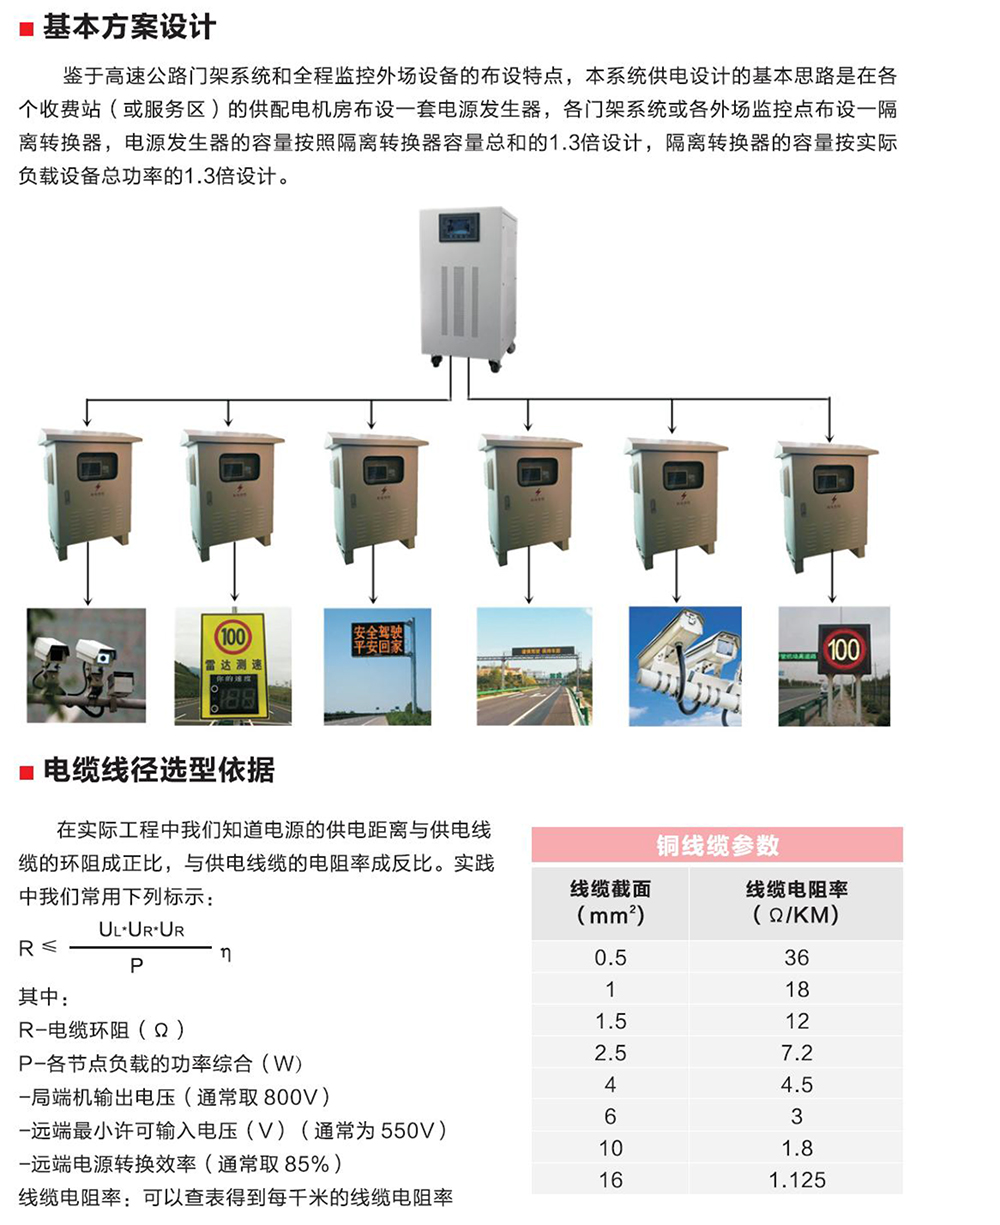 信泰恒通-交流远程供电系统产品手册-5.jpg